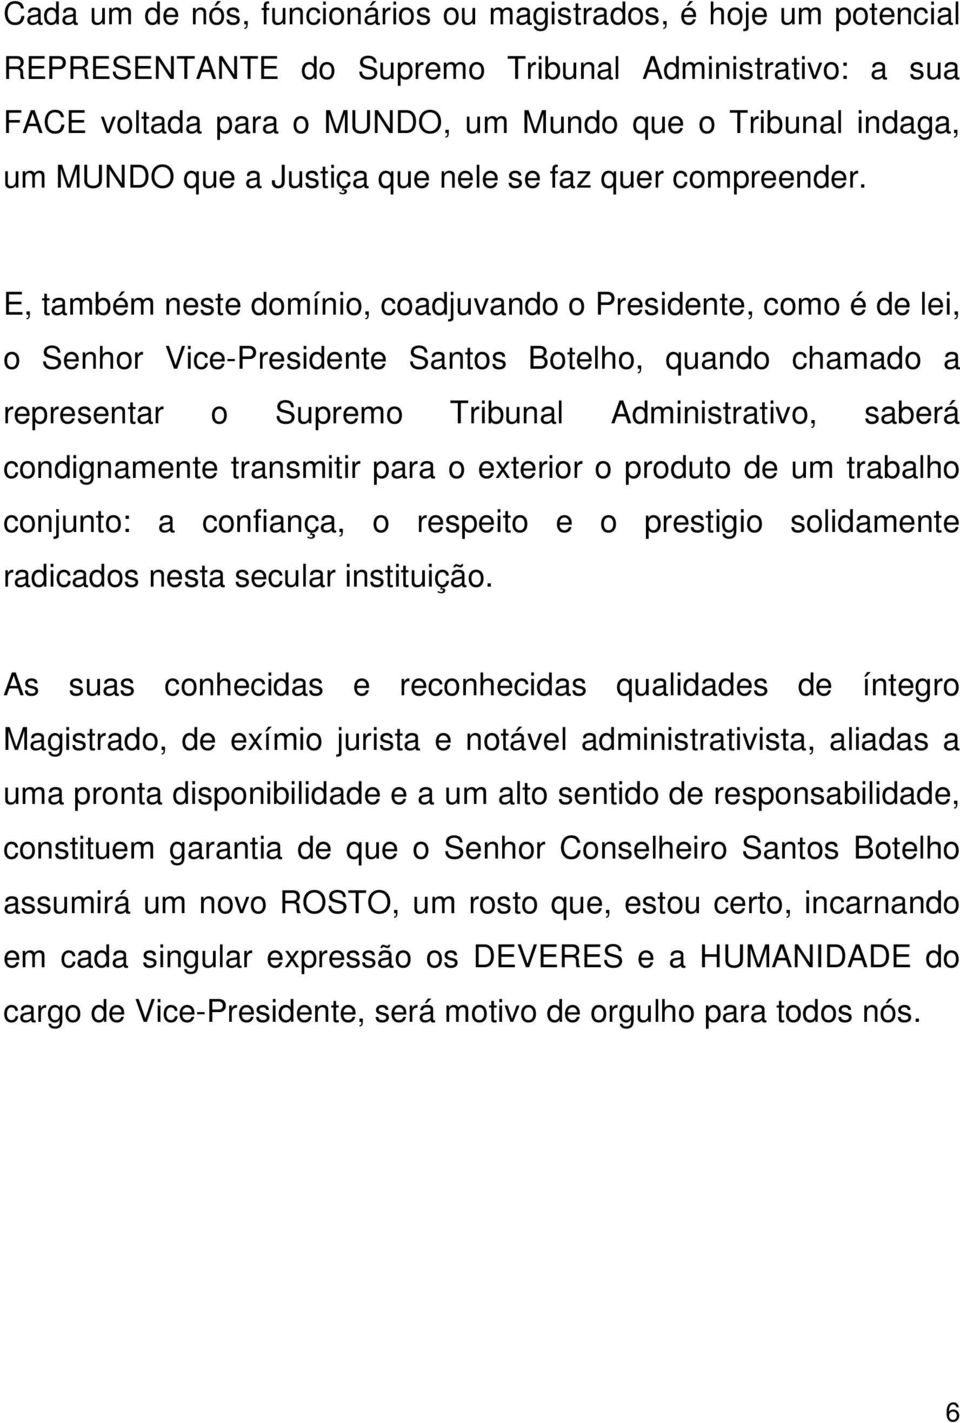 E, também neste domínio, coadjuvando o Presidente, como é de lei, o Senhor Vice-Presidente Santos Botelho, quando chamado a representar o Supremo Tribunal Administrativo, saberá condignamente